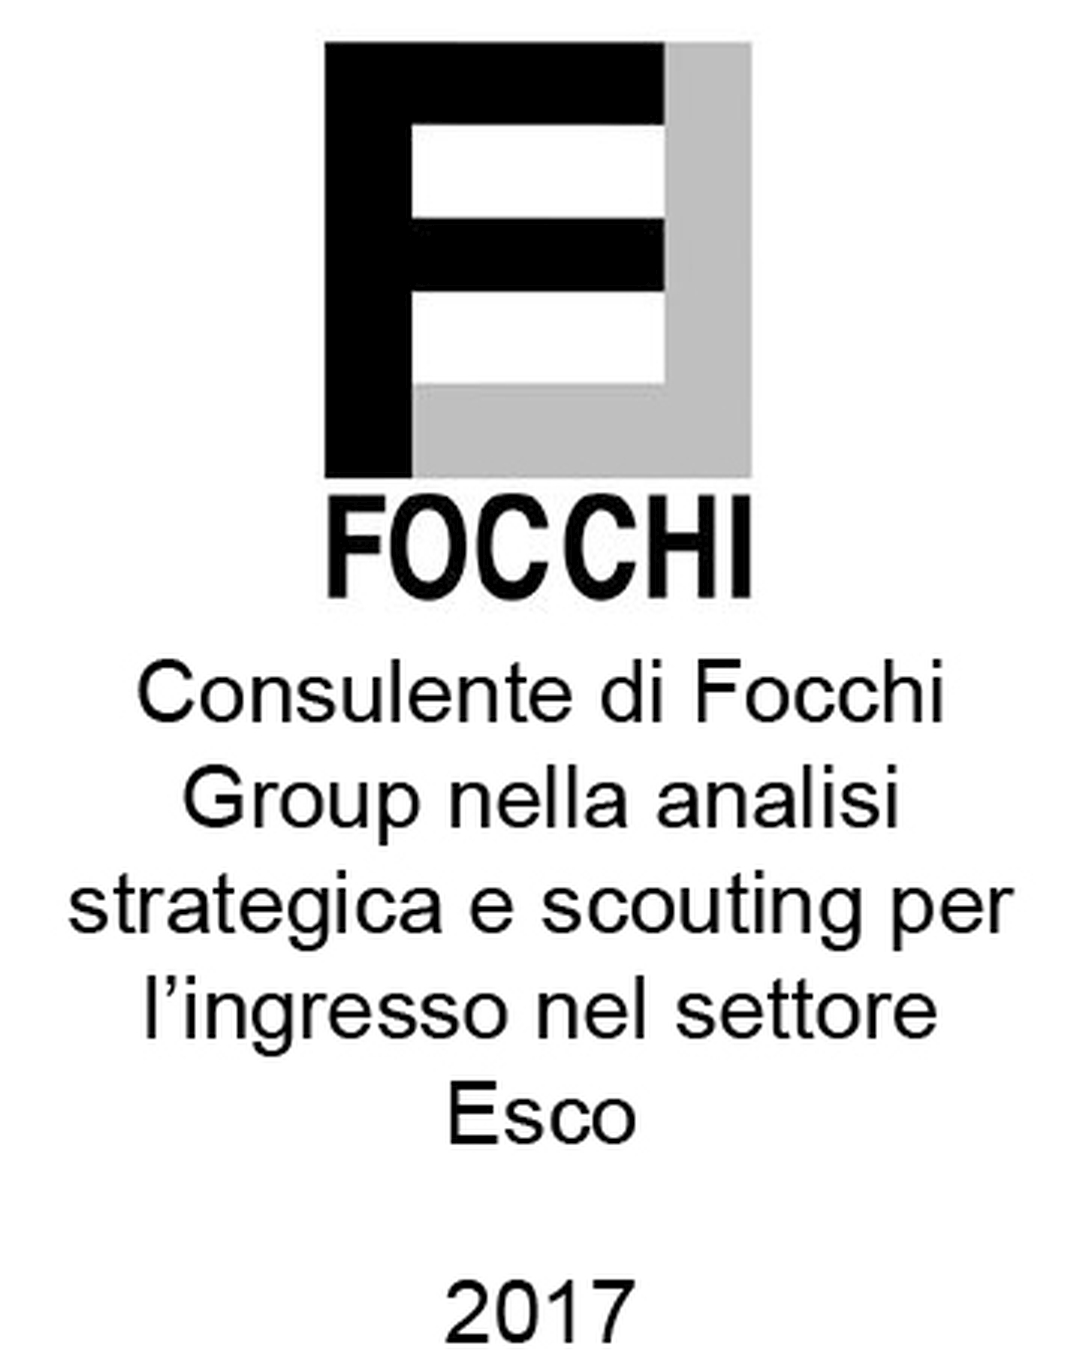 Consulente del Gruppo Focchi nella pianificazione strategica e nel market scouting per l'ingresso nel settore delle ESCo (Energy Service Companies). Incarico completato nel 2017.